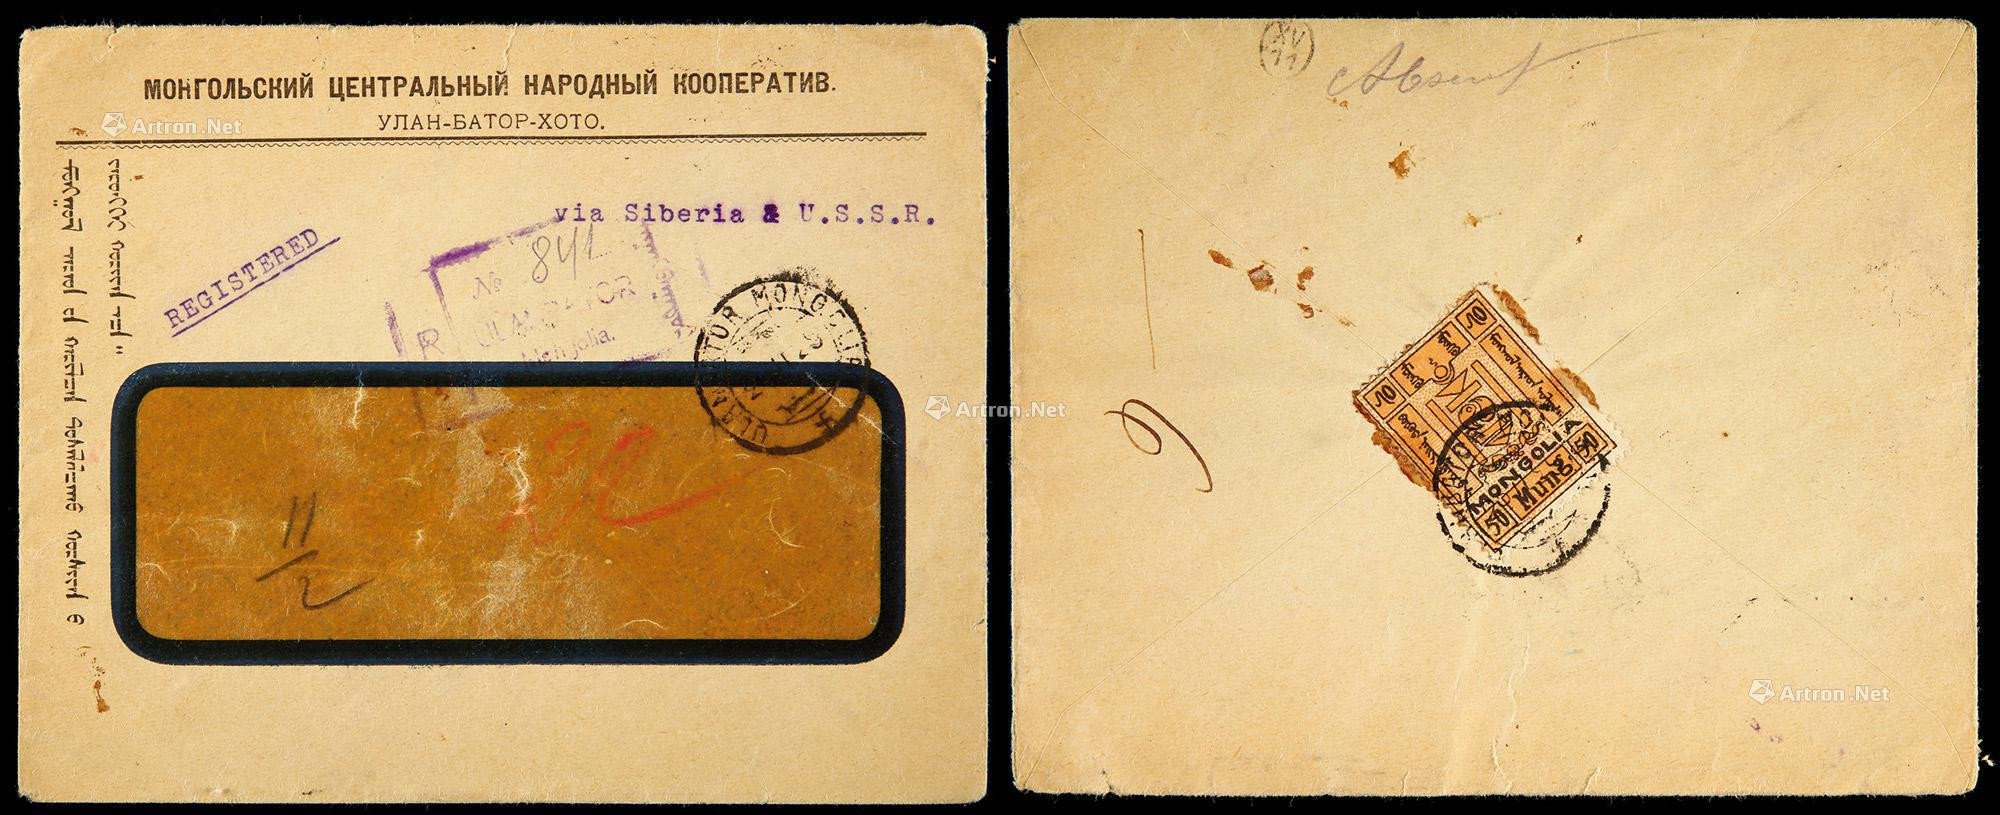 1929年蒙古库伦挂号公事封，背贴50蒙戈邮票一枚